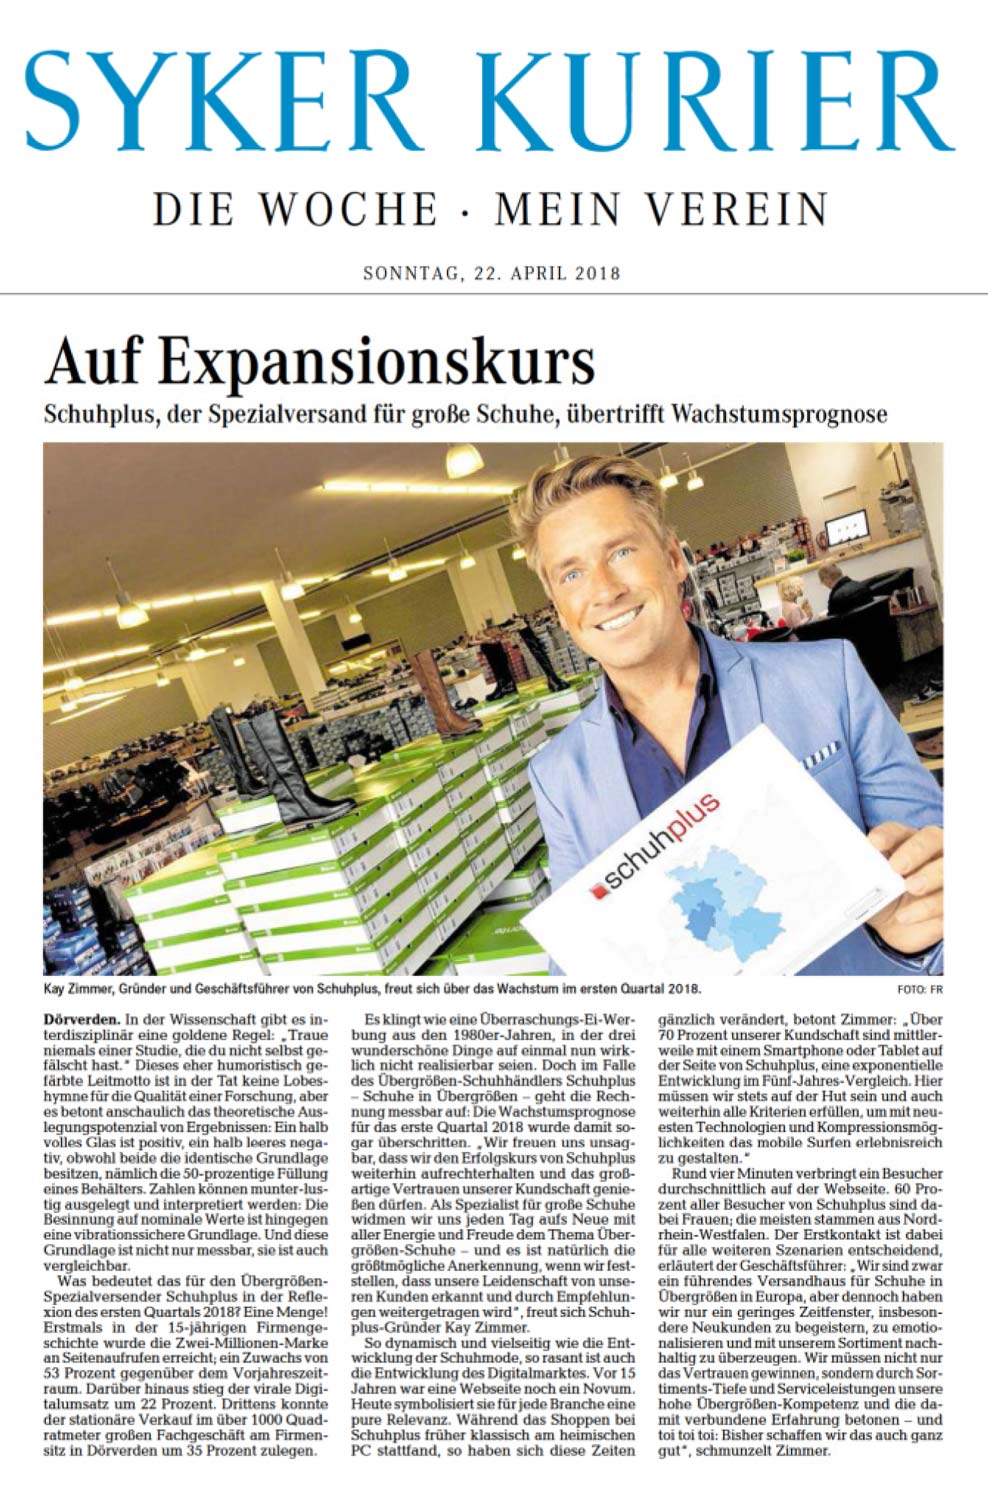 Bericht in der Zeitung "Syker Kurier" zum Expansionskurs von Kay Zimmer und sein Unternehmen schuhplus - Schuhe in Übergrößen - aus Dörverden